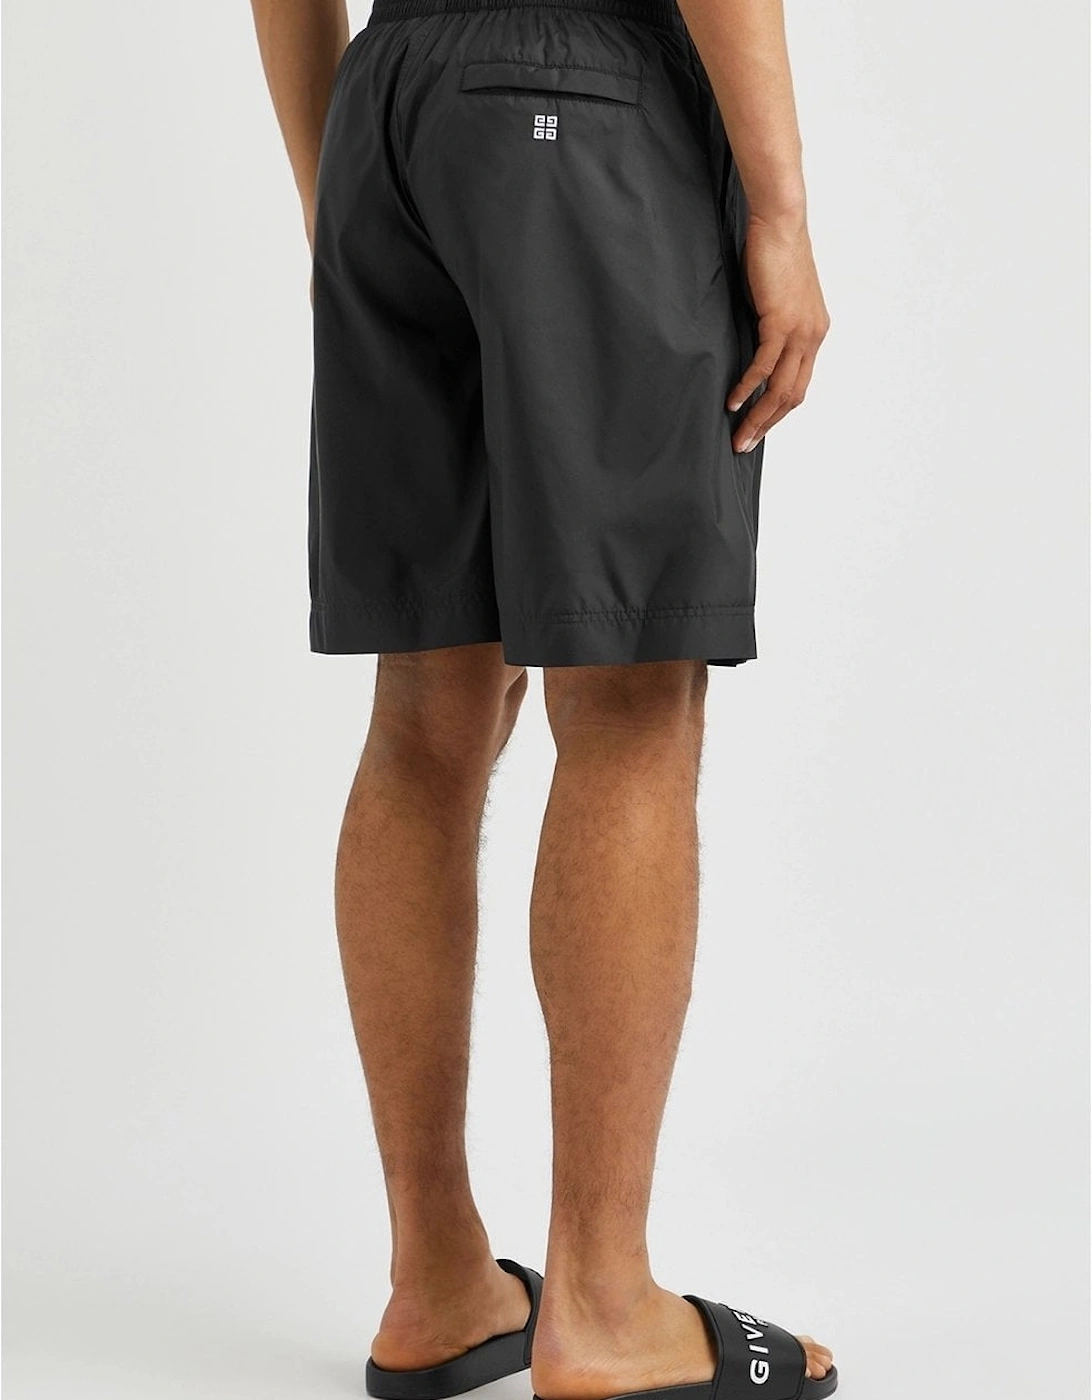 TK-MX Nylon Shorts Black